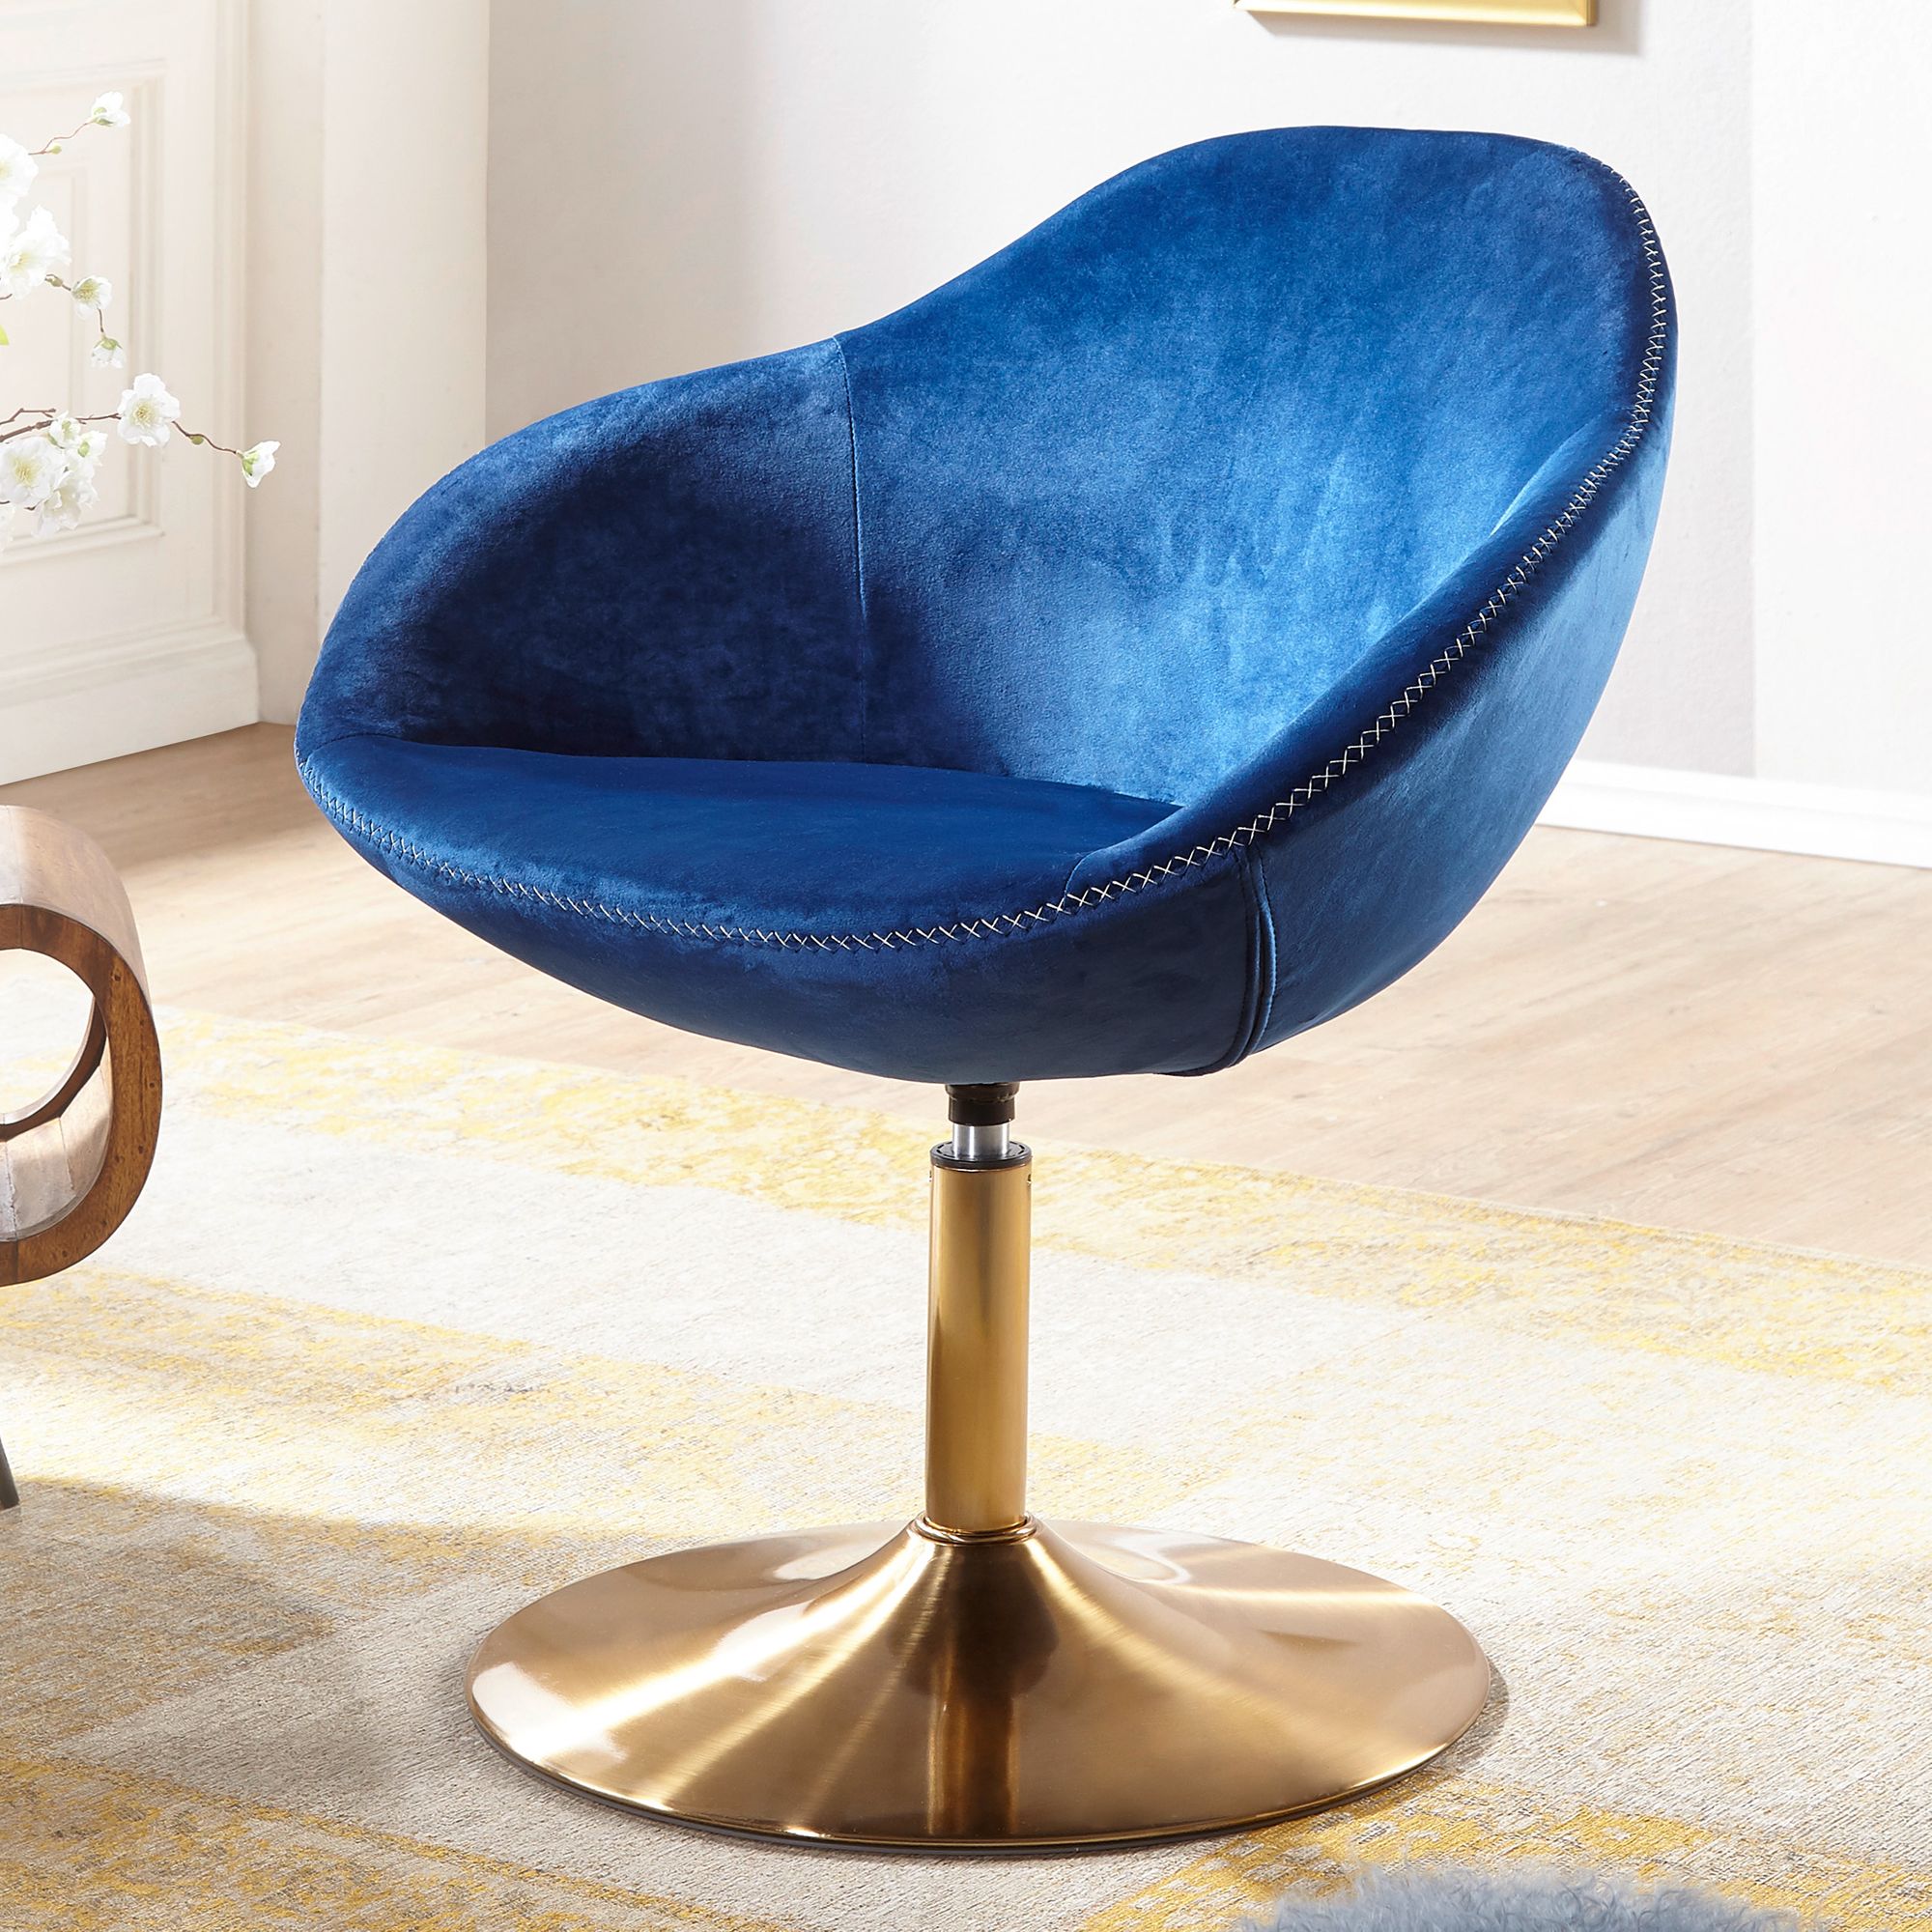 Nancy's Santa Fe Armchair - Chaise longue - Chaise baquet - Chaise de bureau - Fauteuil relax - Fauteuil en velours - Velours - Bleu